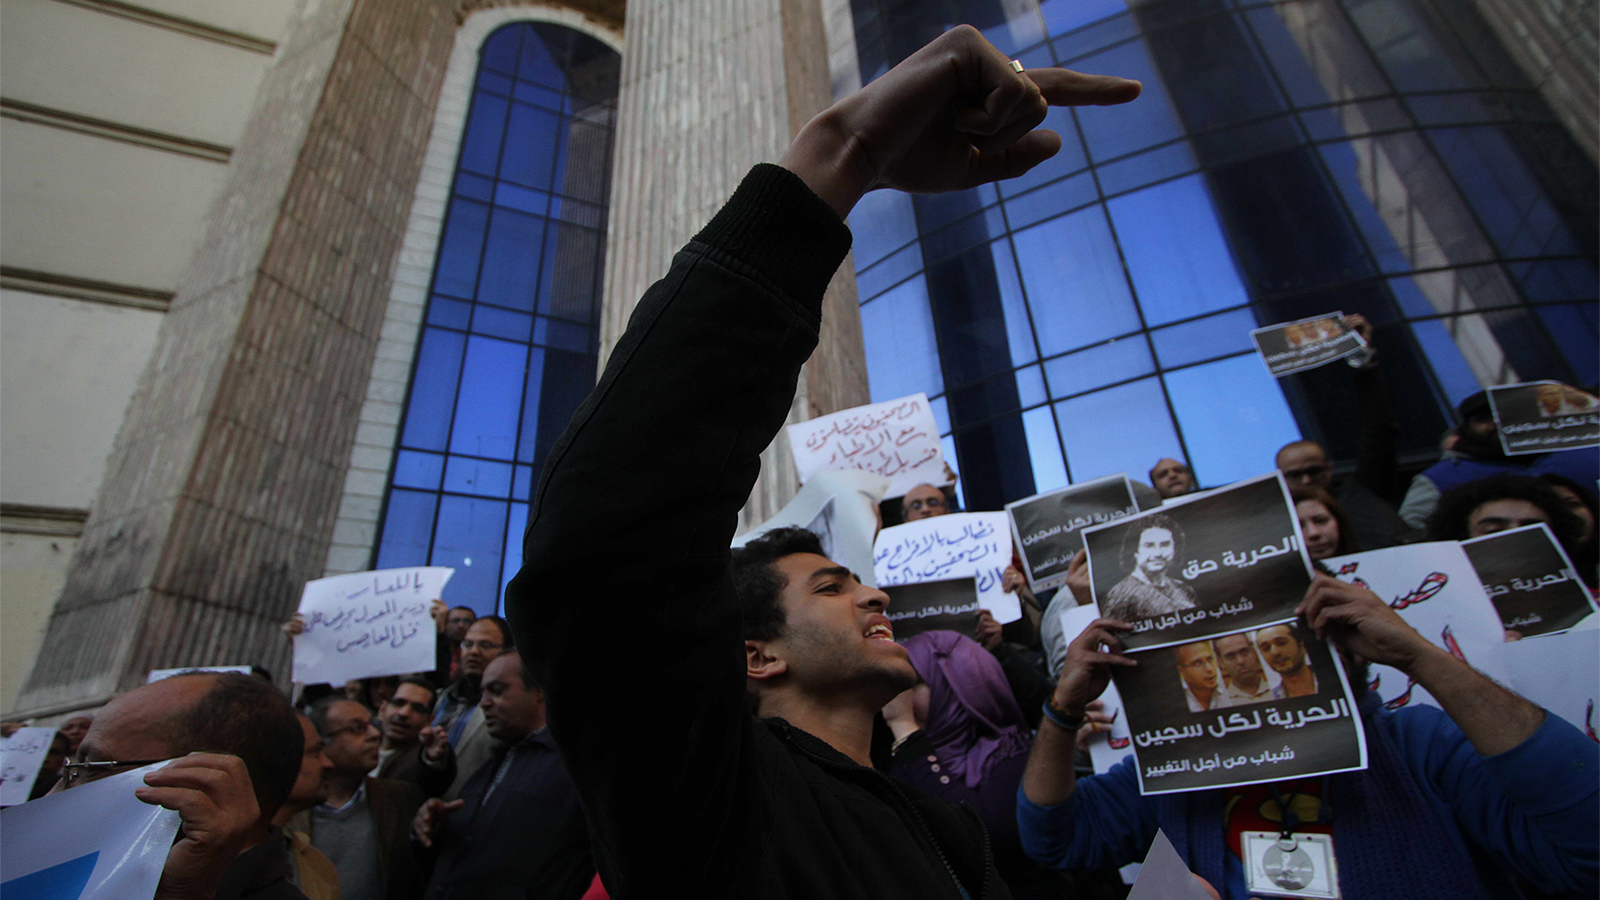 نشطاء يطالبون بالحرية لماهينور المصري (مواقع التواصل)